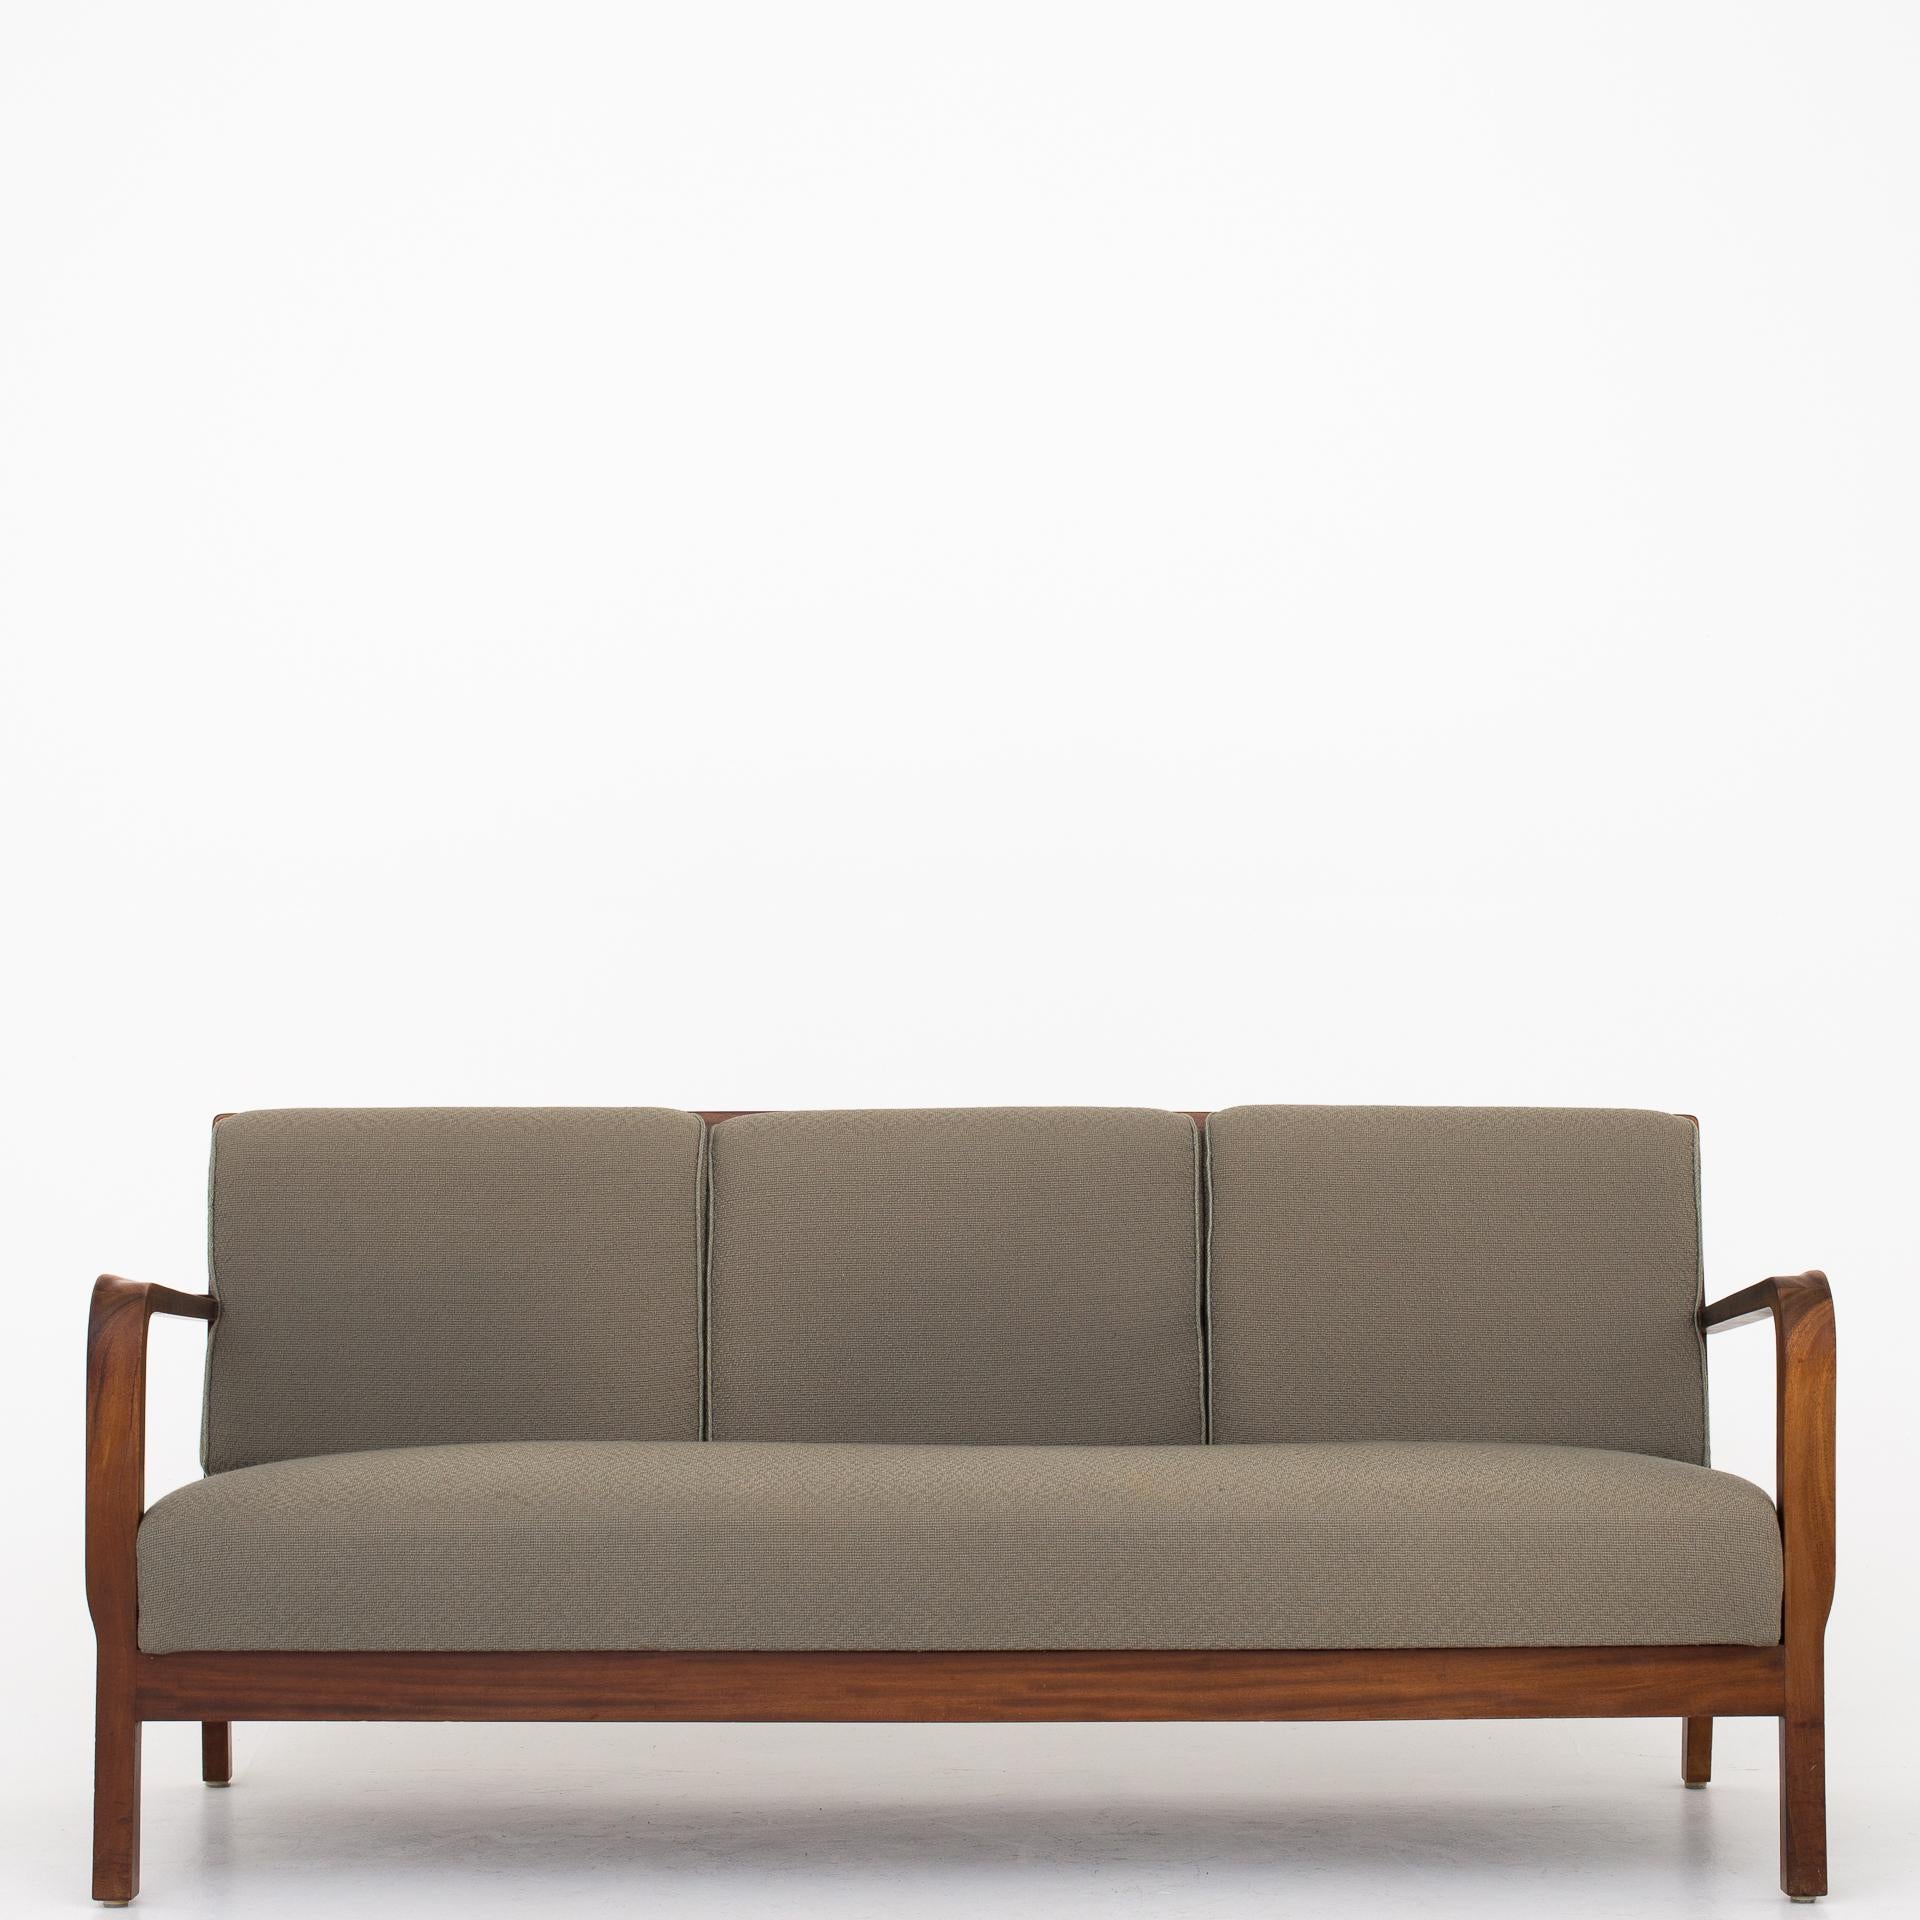 Mahogany 3-Seat Sofa by Tove & Edvard Kindt Larsen